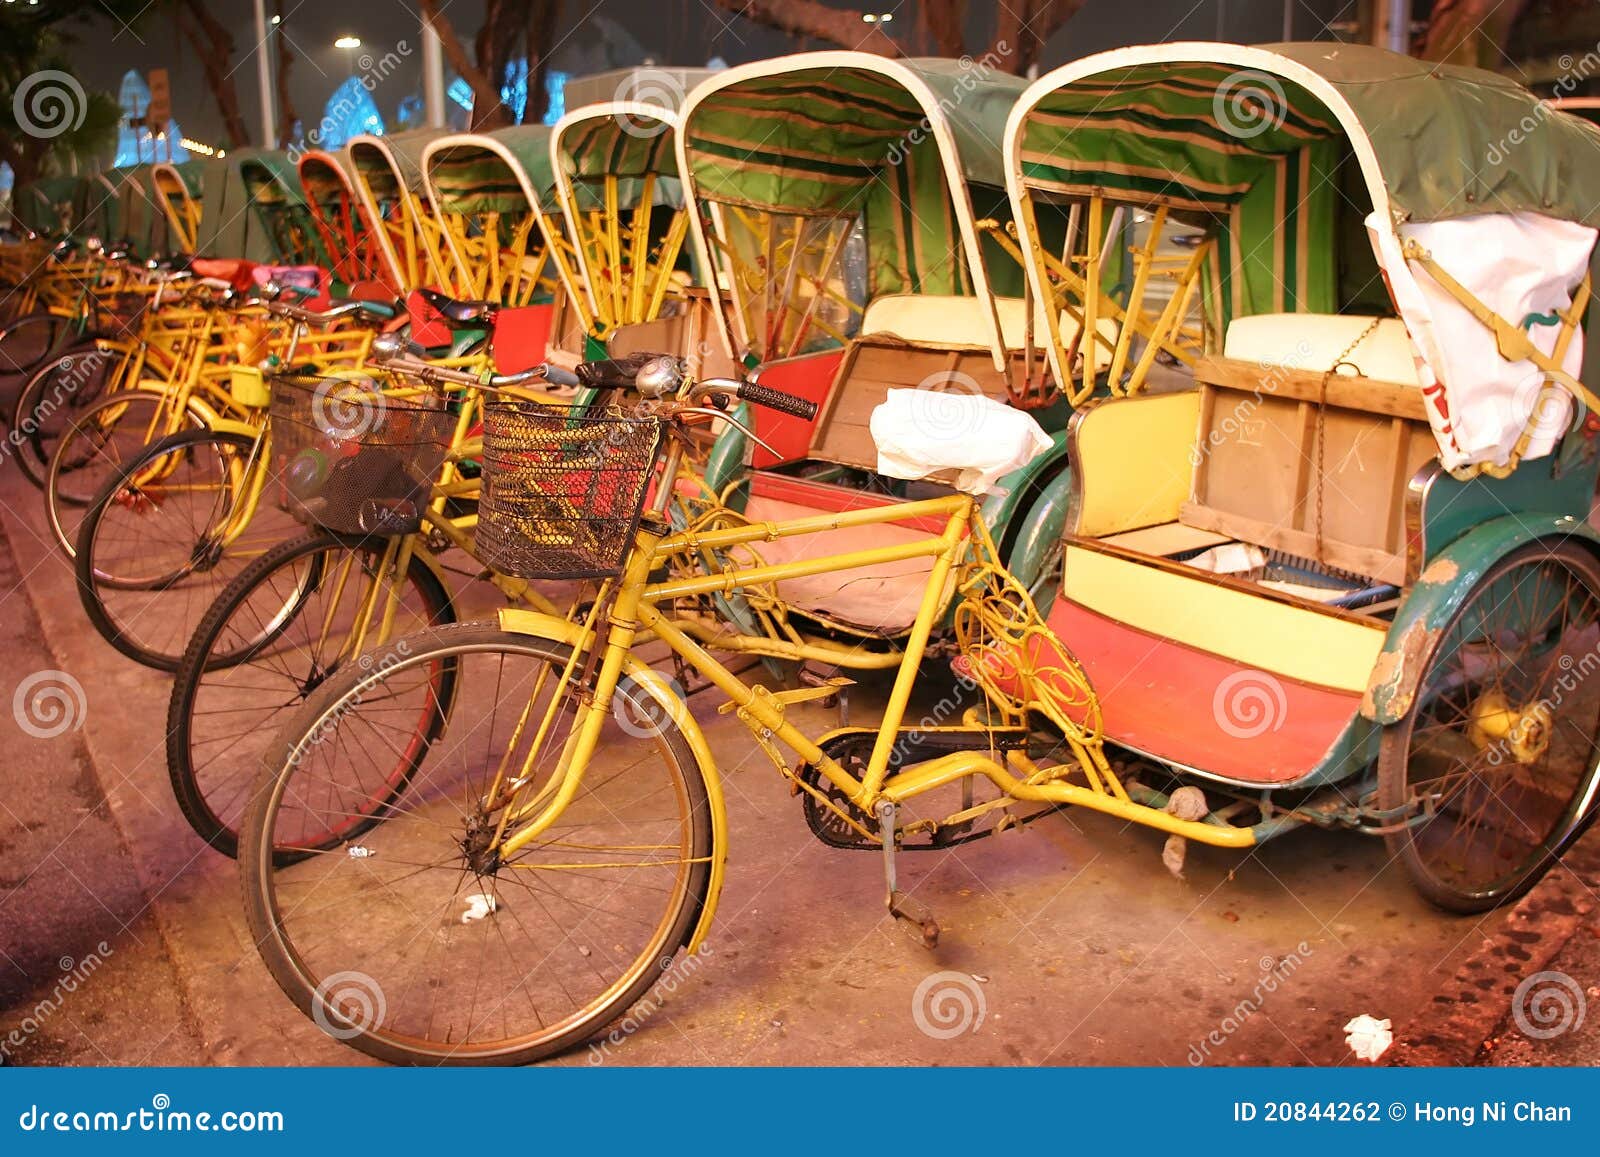 row of trishaw, macau